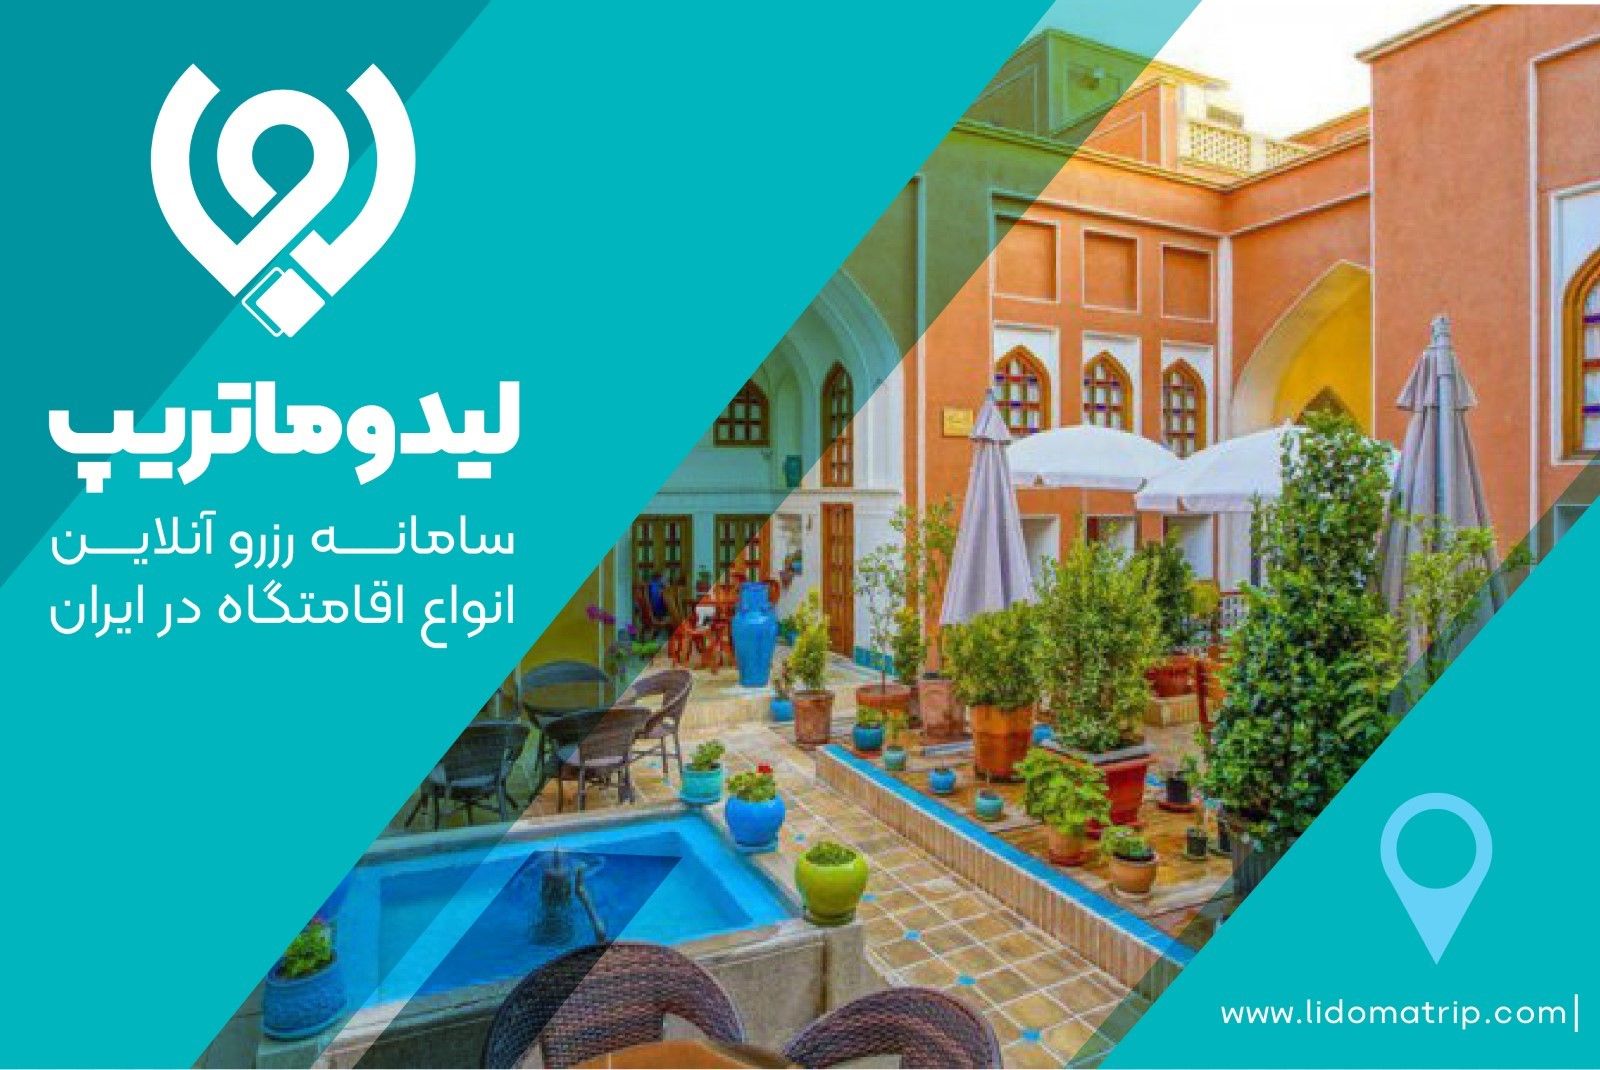 لیدوماتریپ : اجاره انواع اقامتگاه در ایران